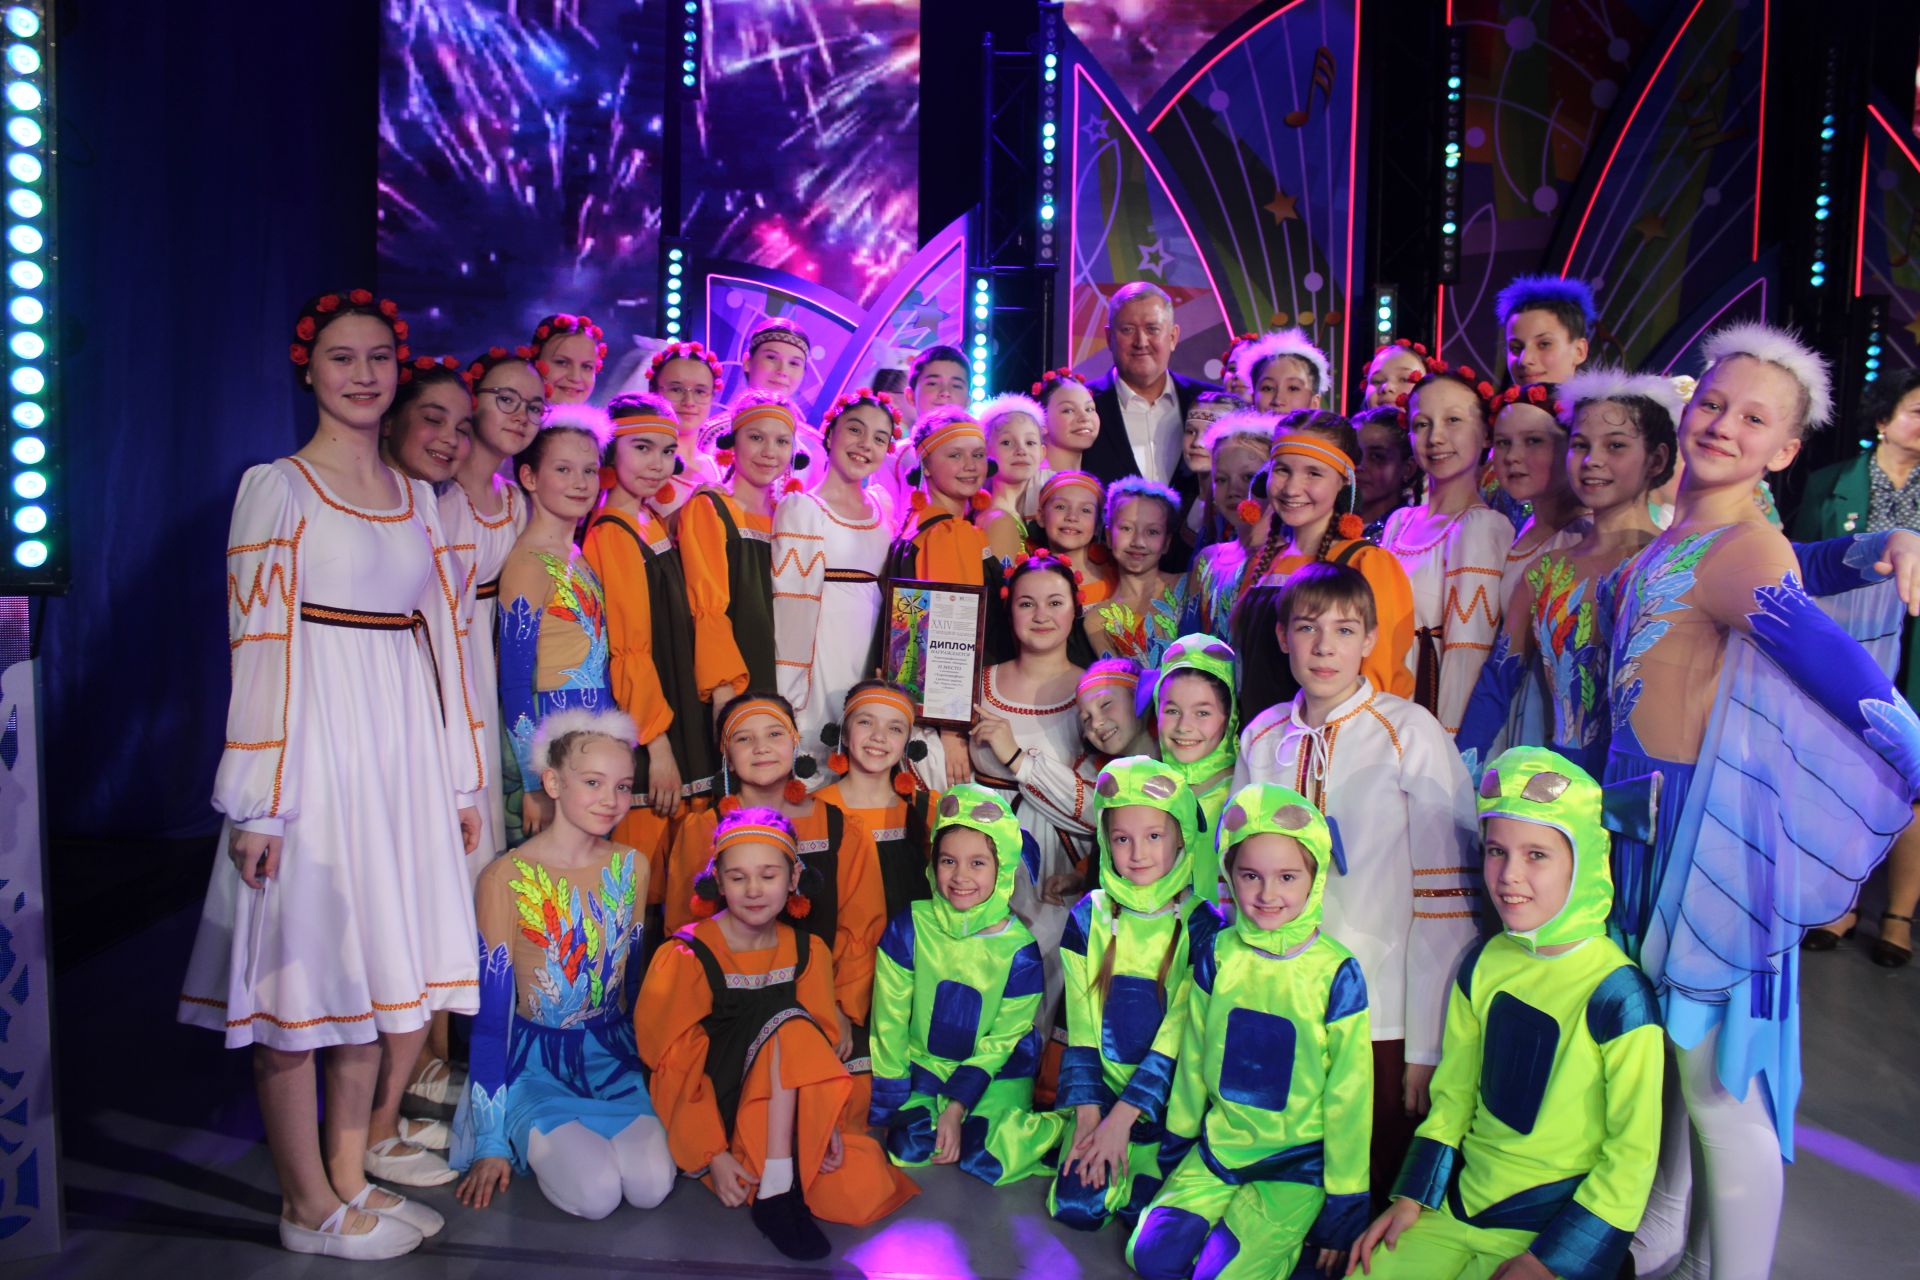 Заинцы отправятся на финал фестиваля «Созвездие-Йолдызлык» в Казань